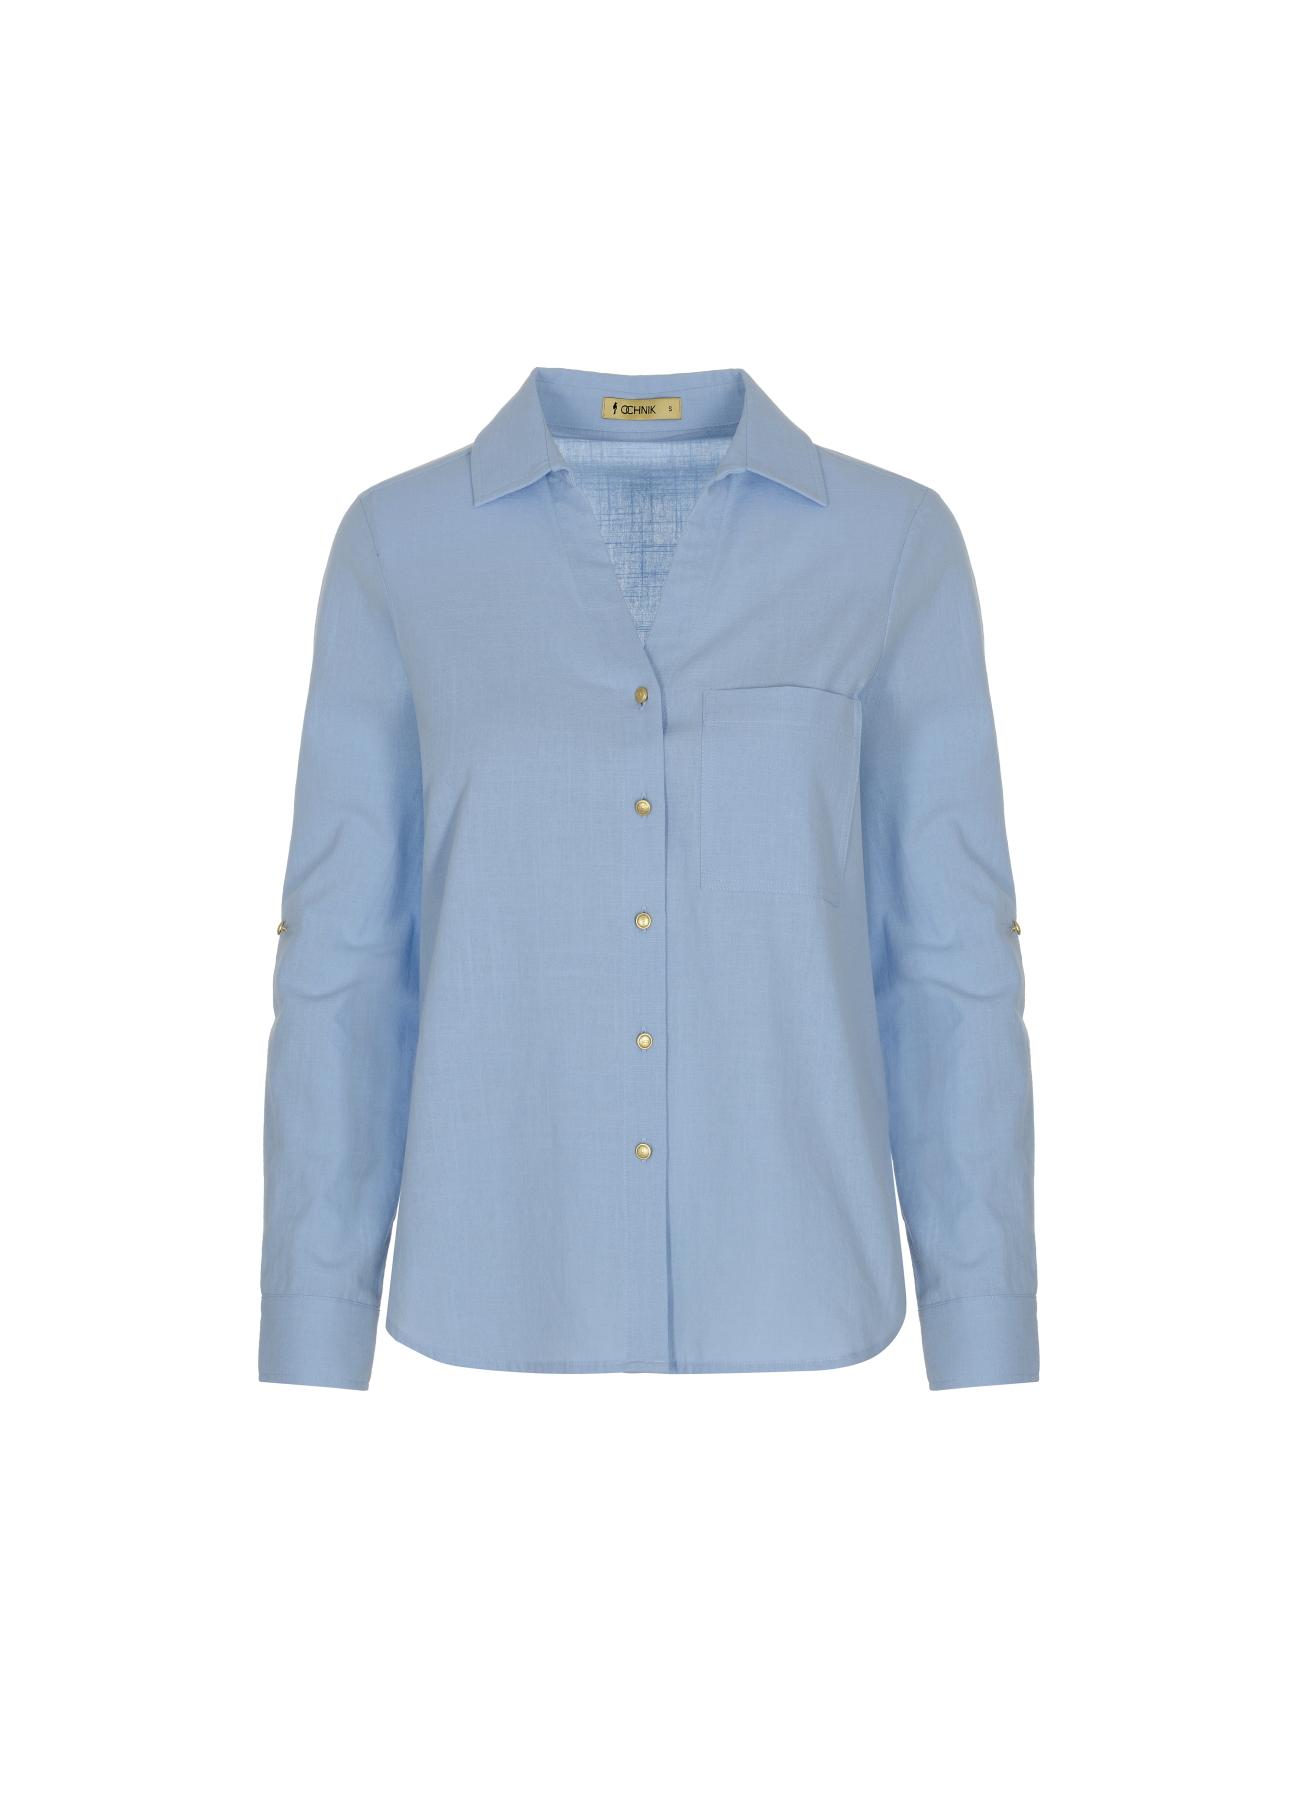 Błękitna koszula bawełniana damska KOSDT-0092-62(W22)